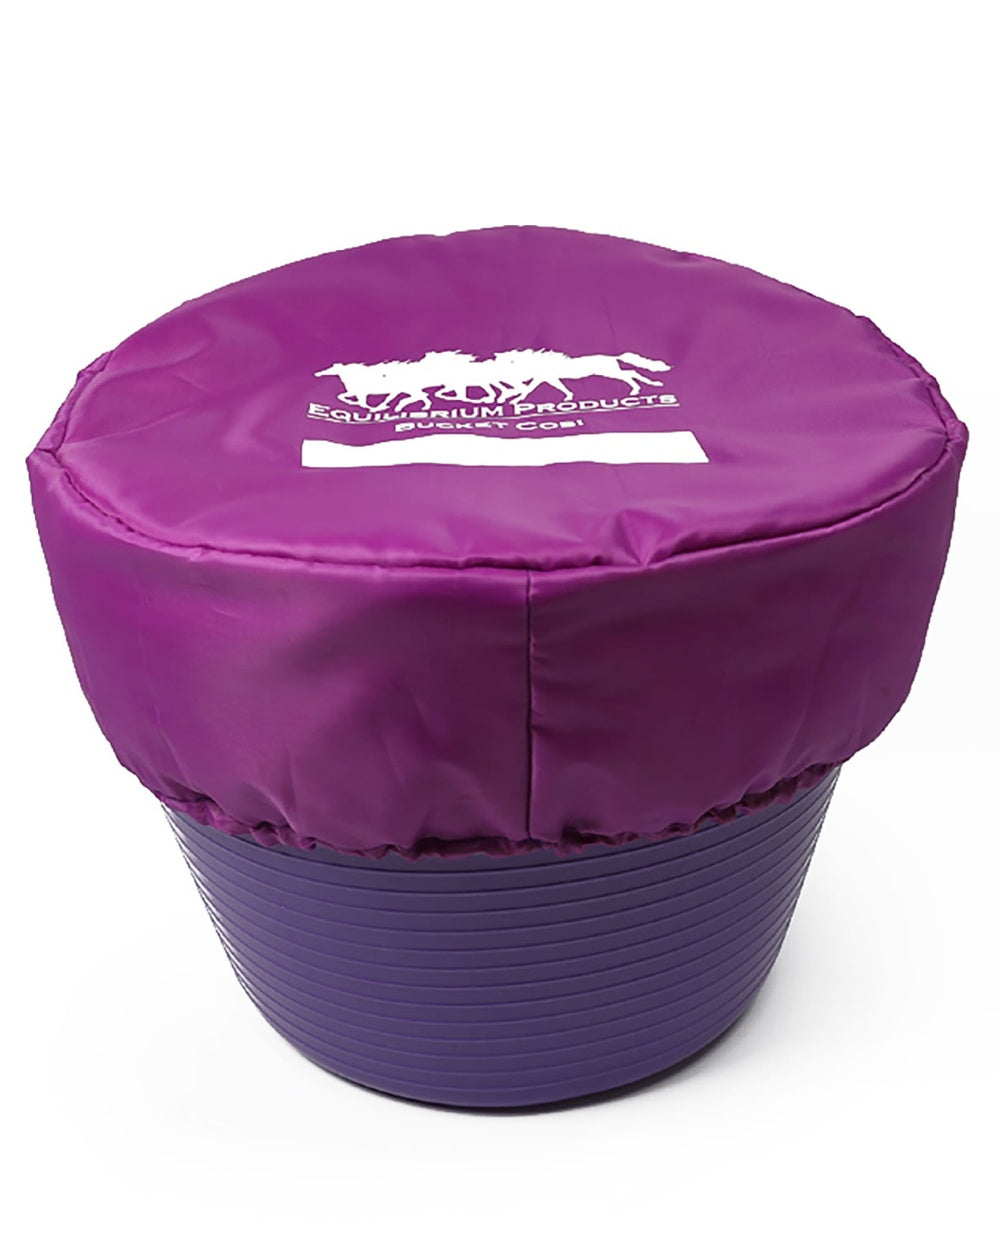 Purple coloured Equilibrium Bucket Cosi on white background 